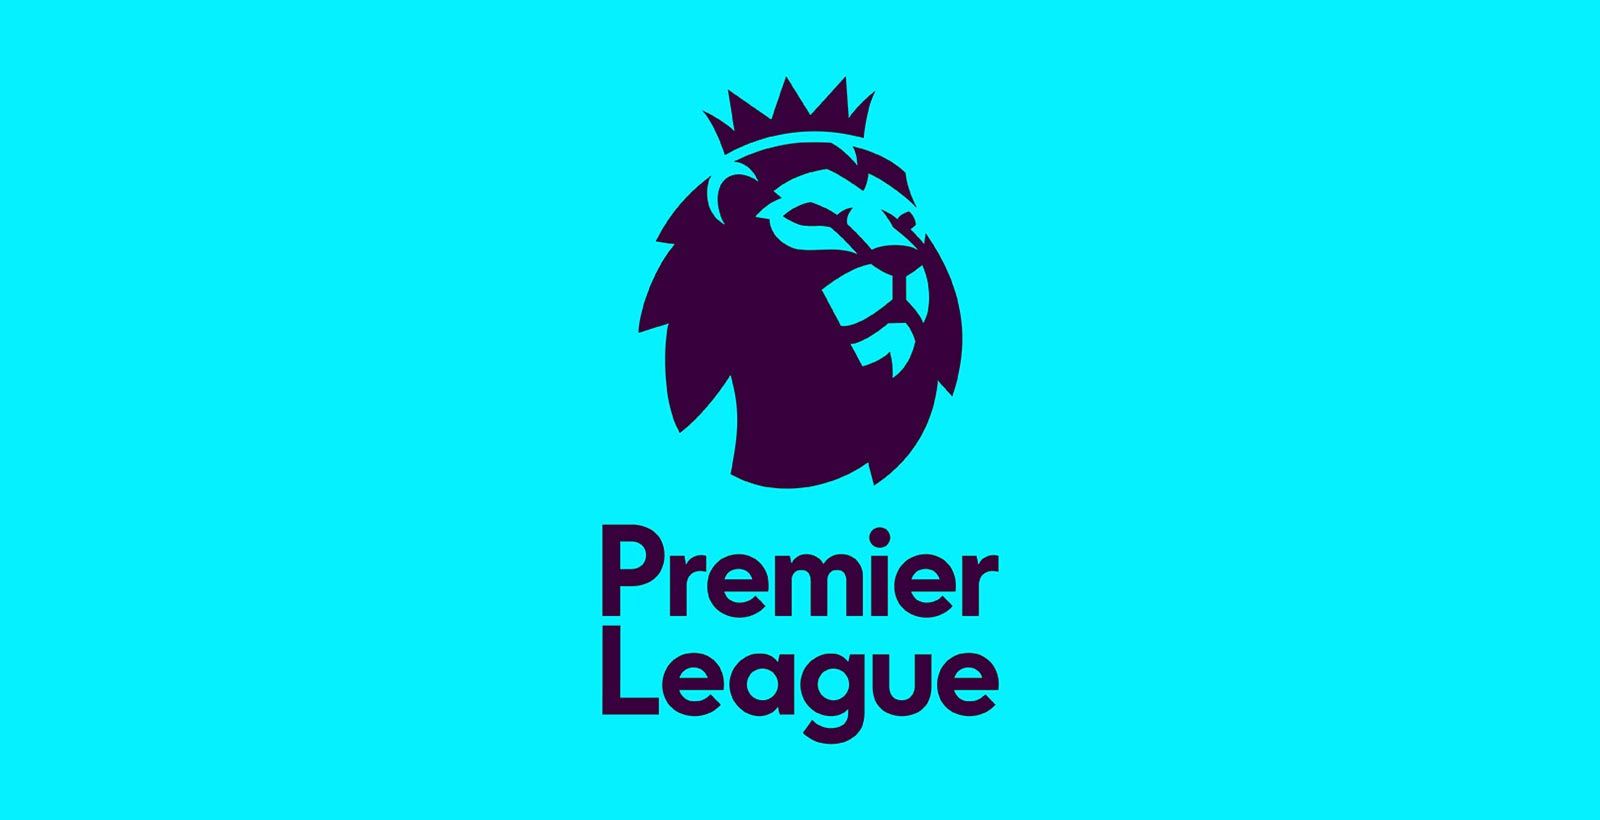 English premier league